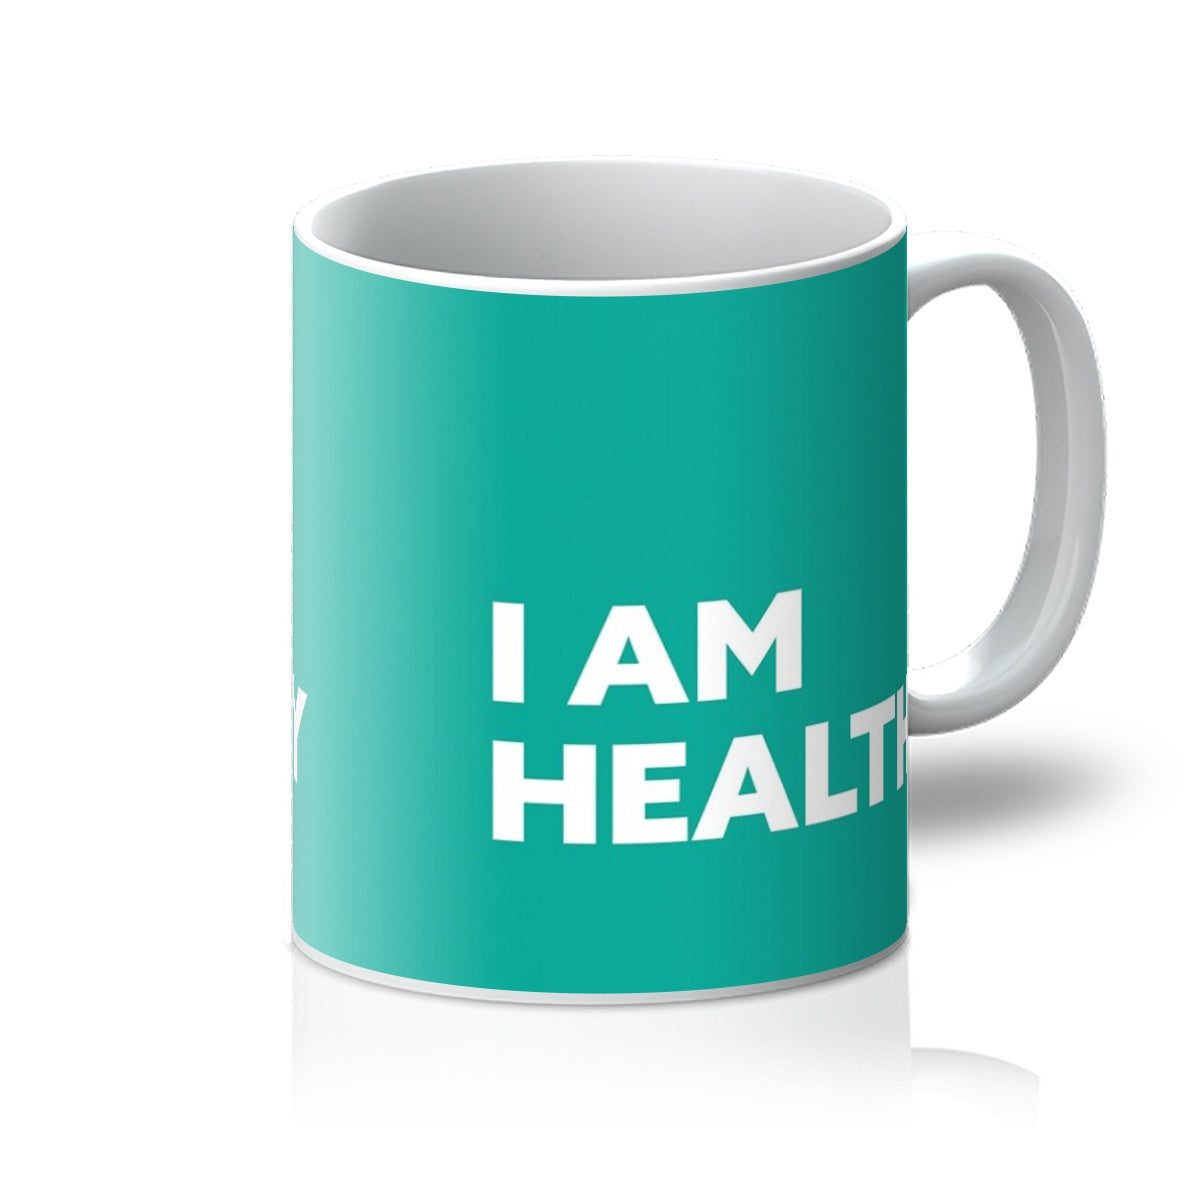 I AM Healthy – Teal Mug